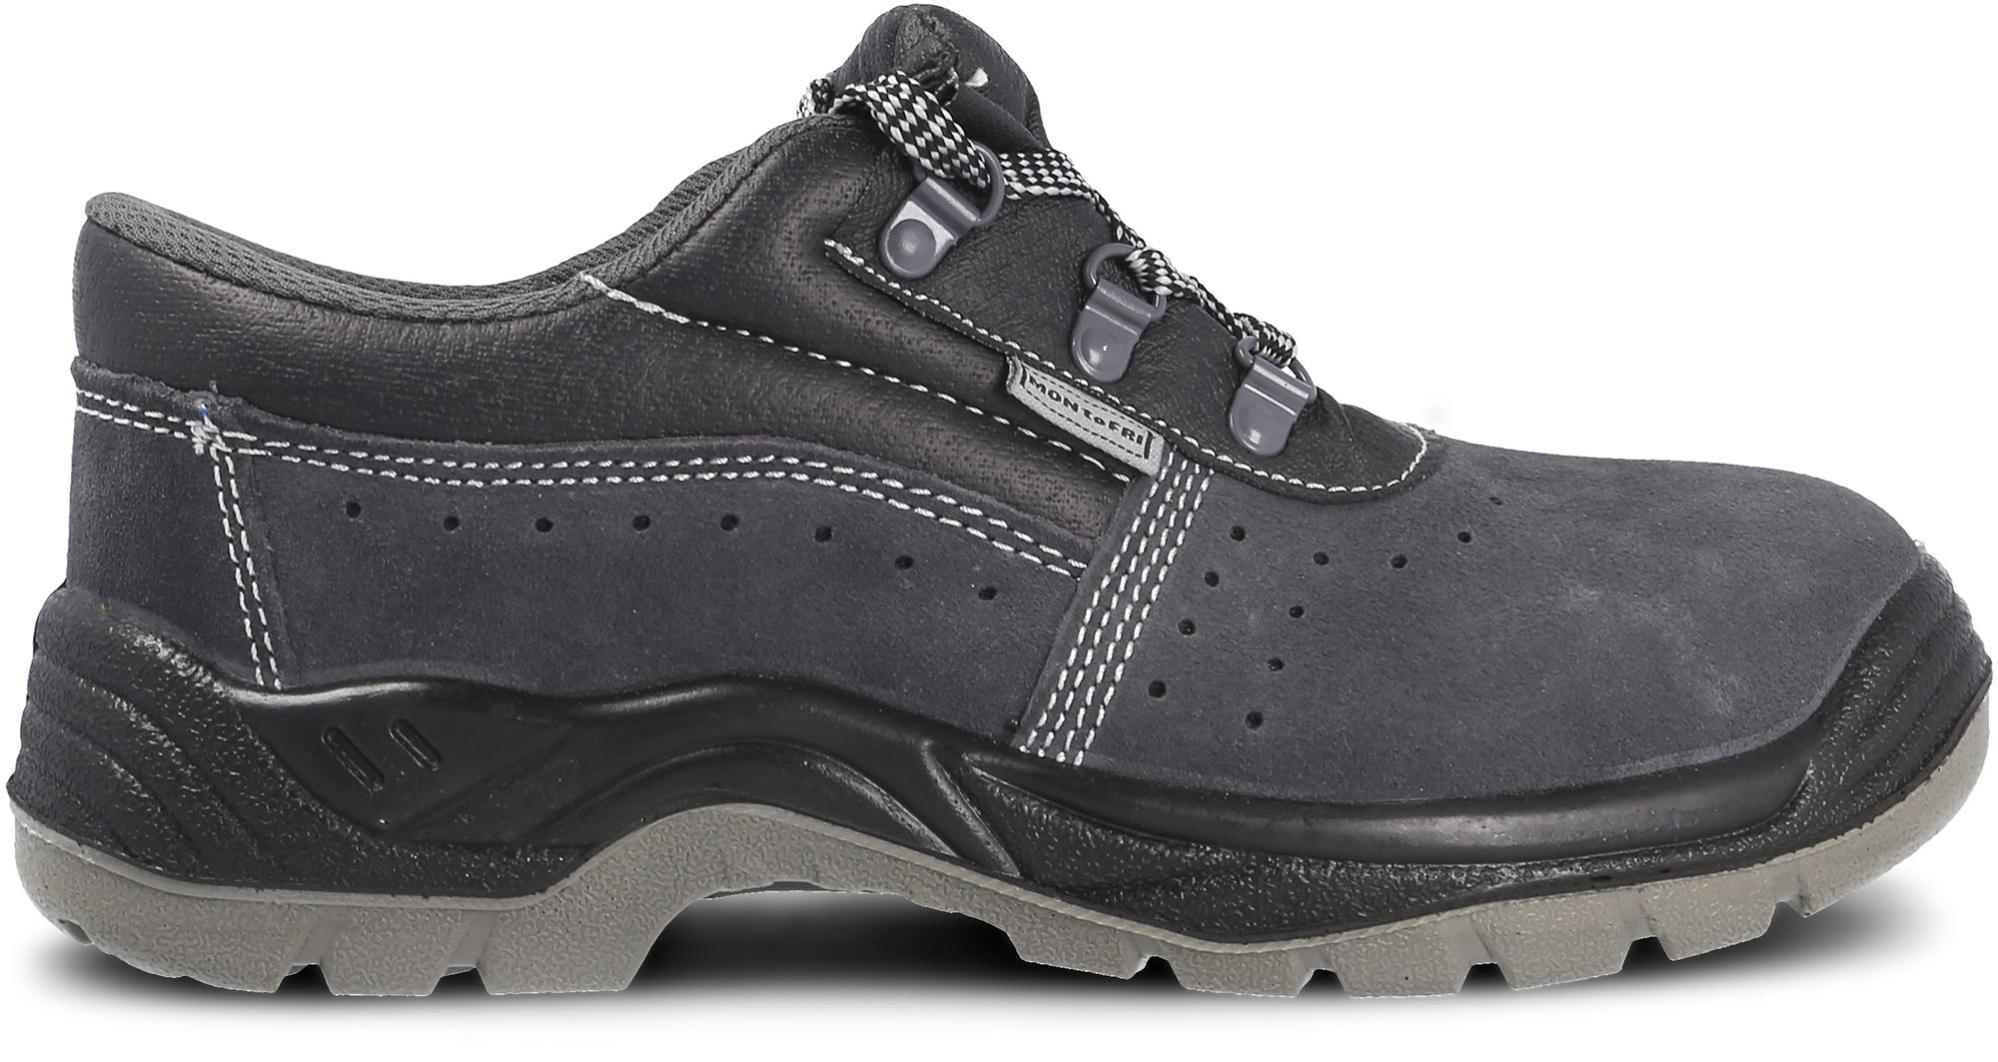 Zapato seguridad paredes, zp1002 serraje gris, s1p talla 47